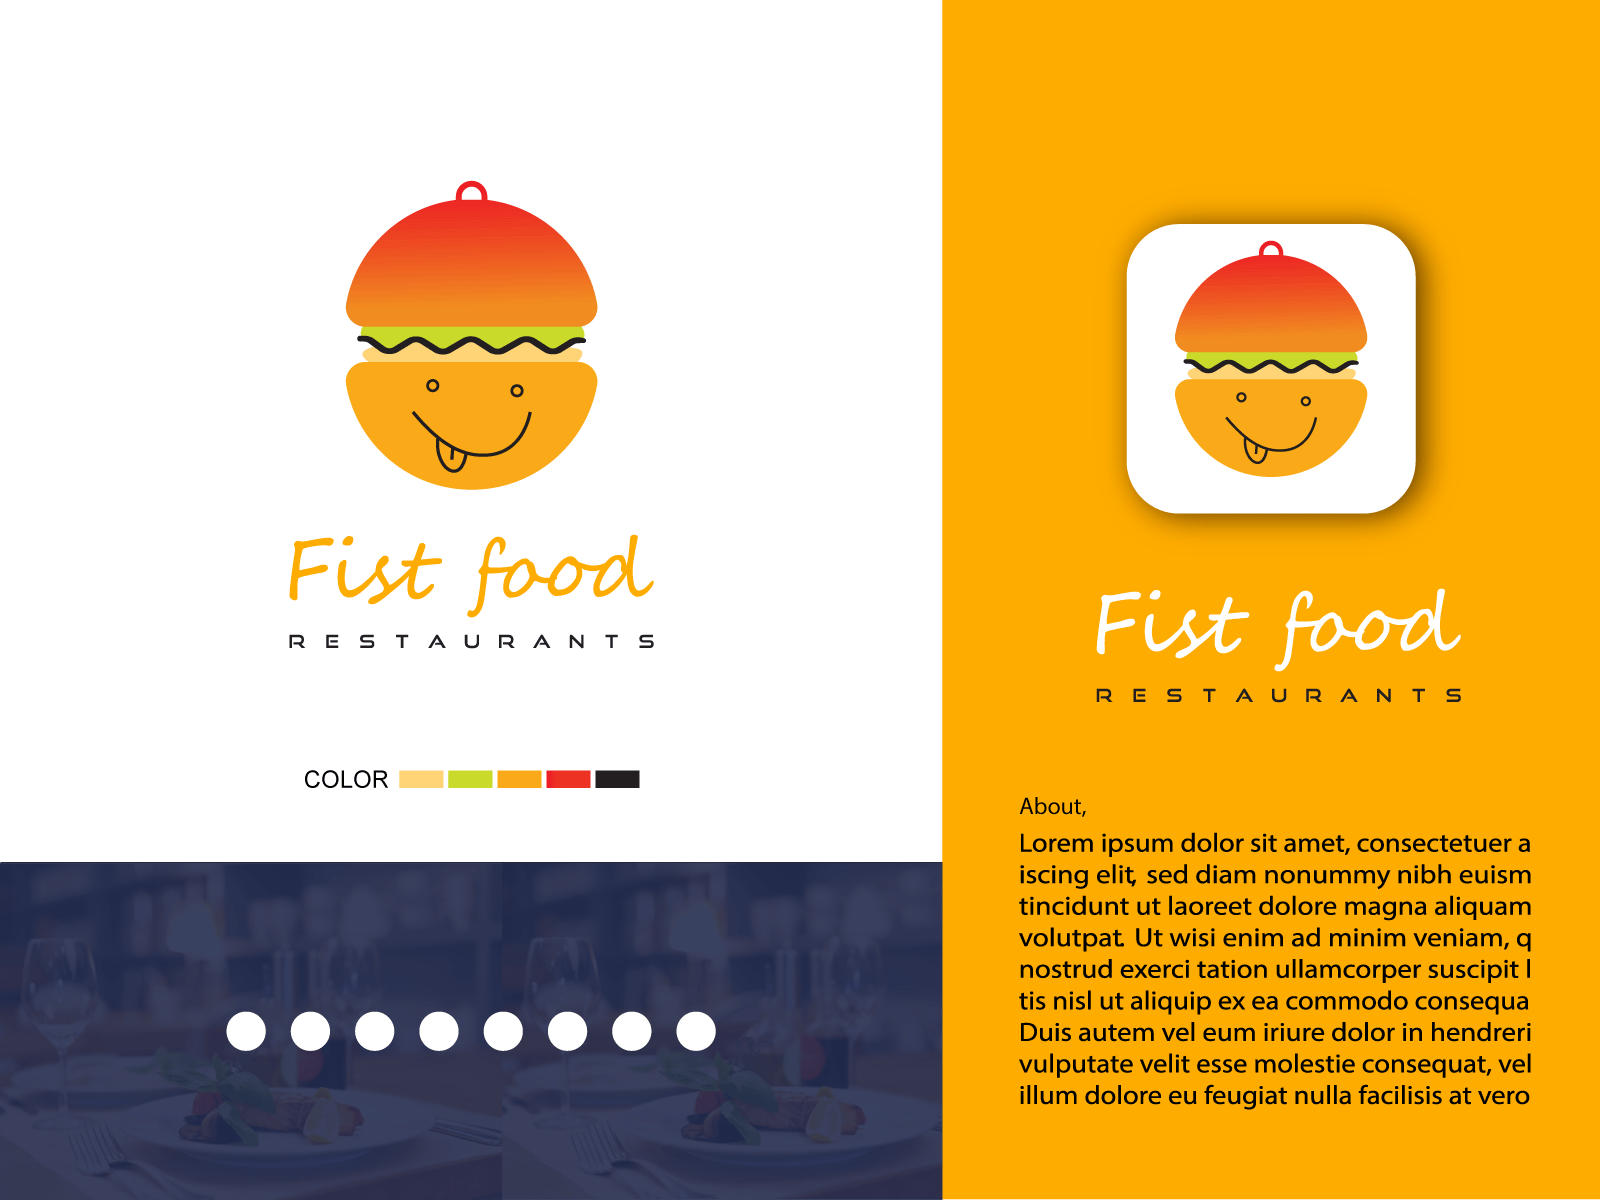 Fist food